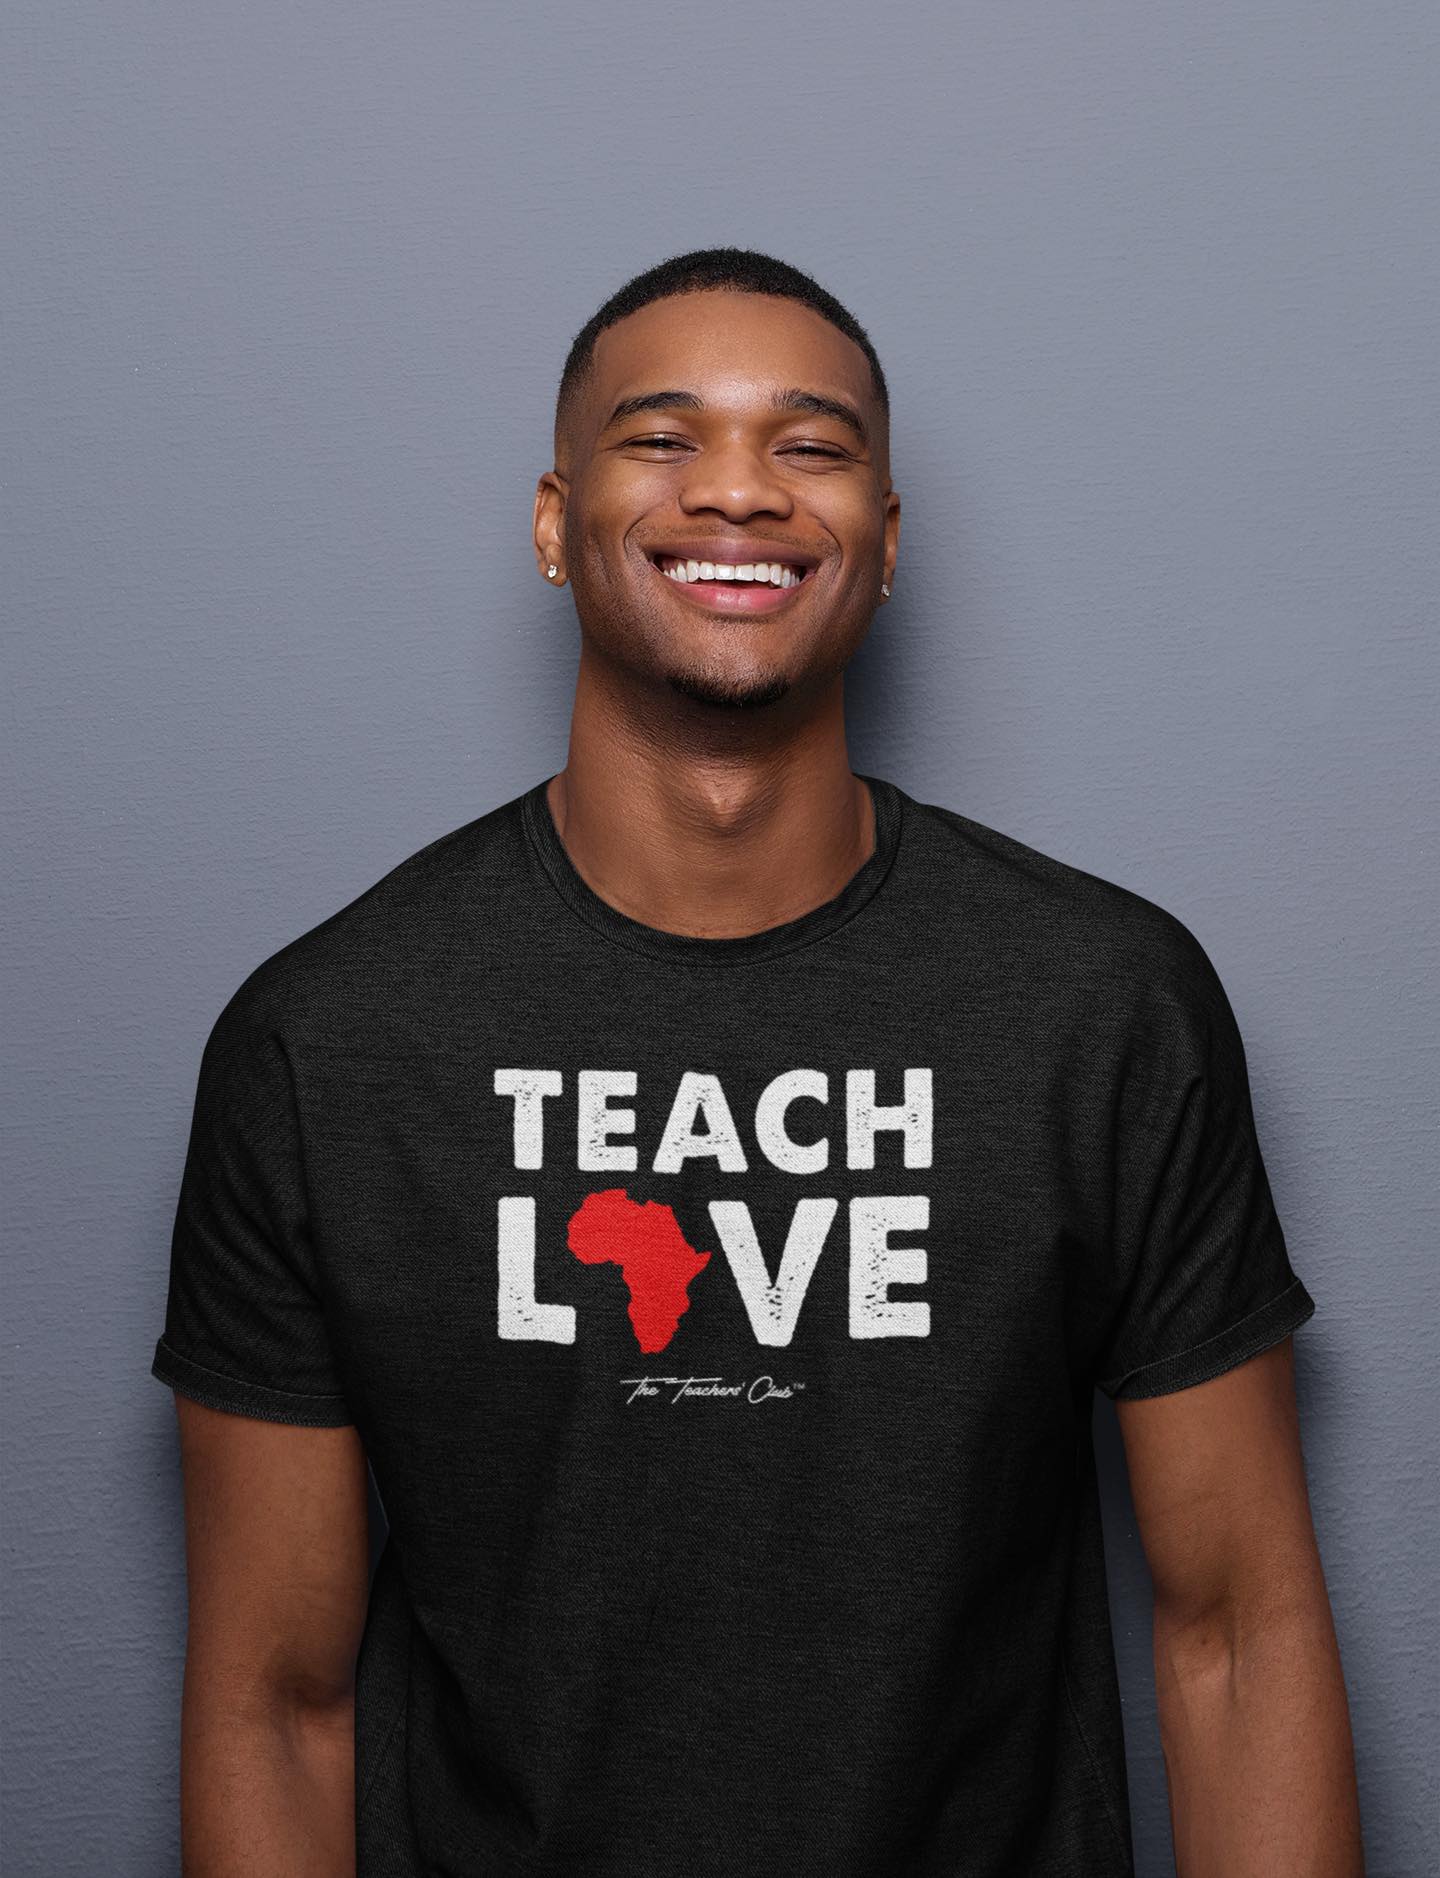 Image of man in educator shirt